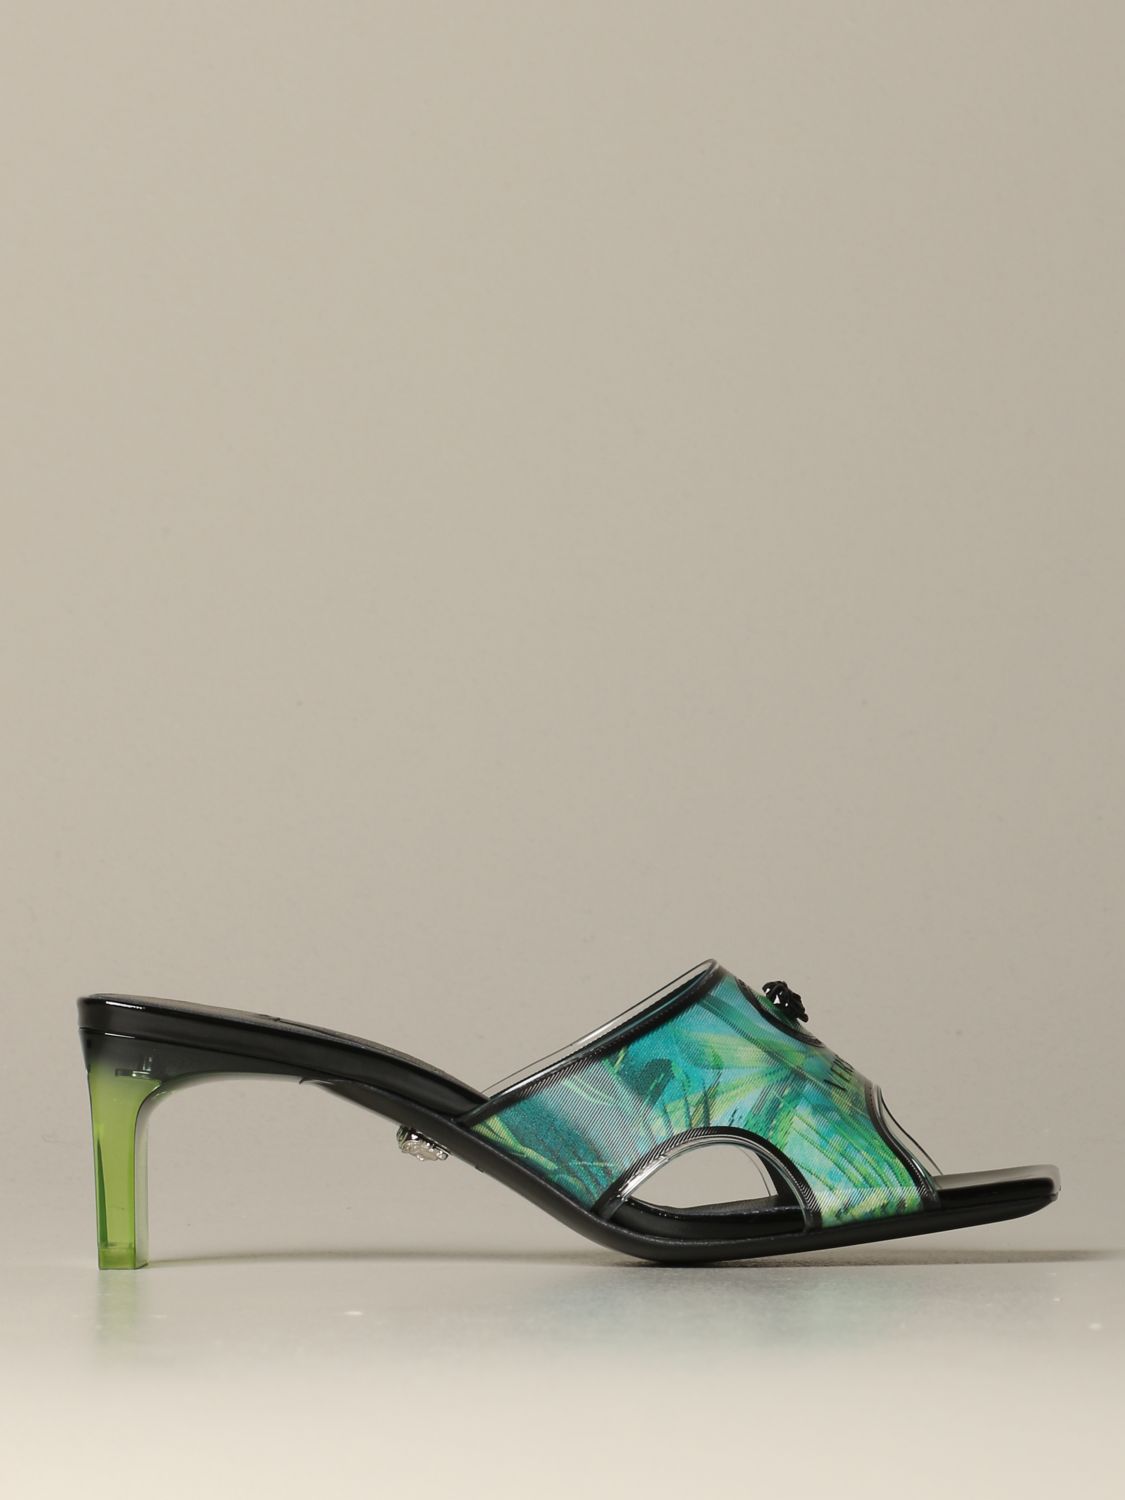 versace pvc heels